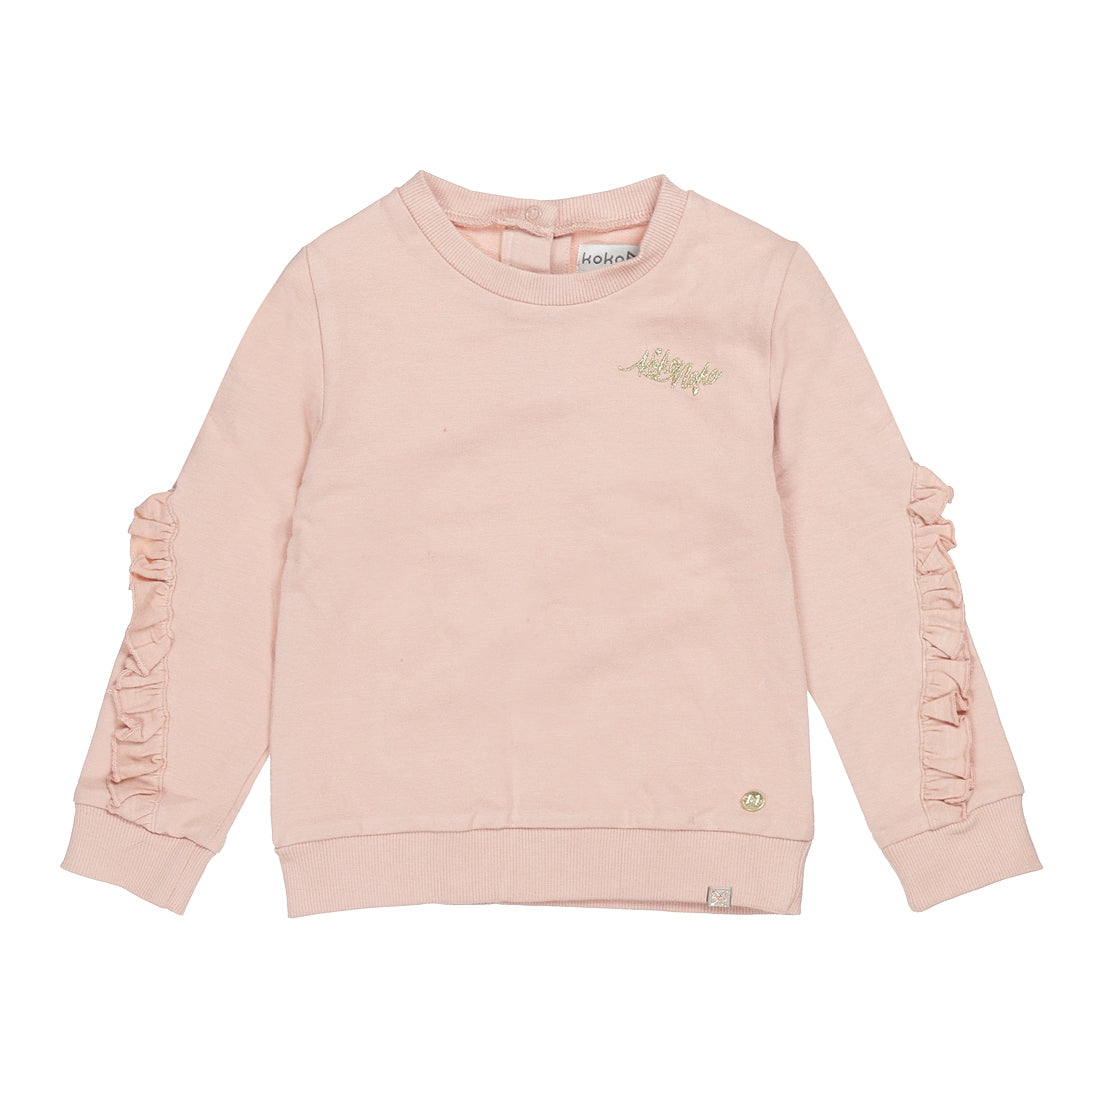 Meisjes Sweater ls with crewneck van Koko Noko in de kleur Dusty pink in maat 128.